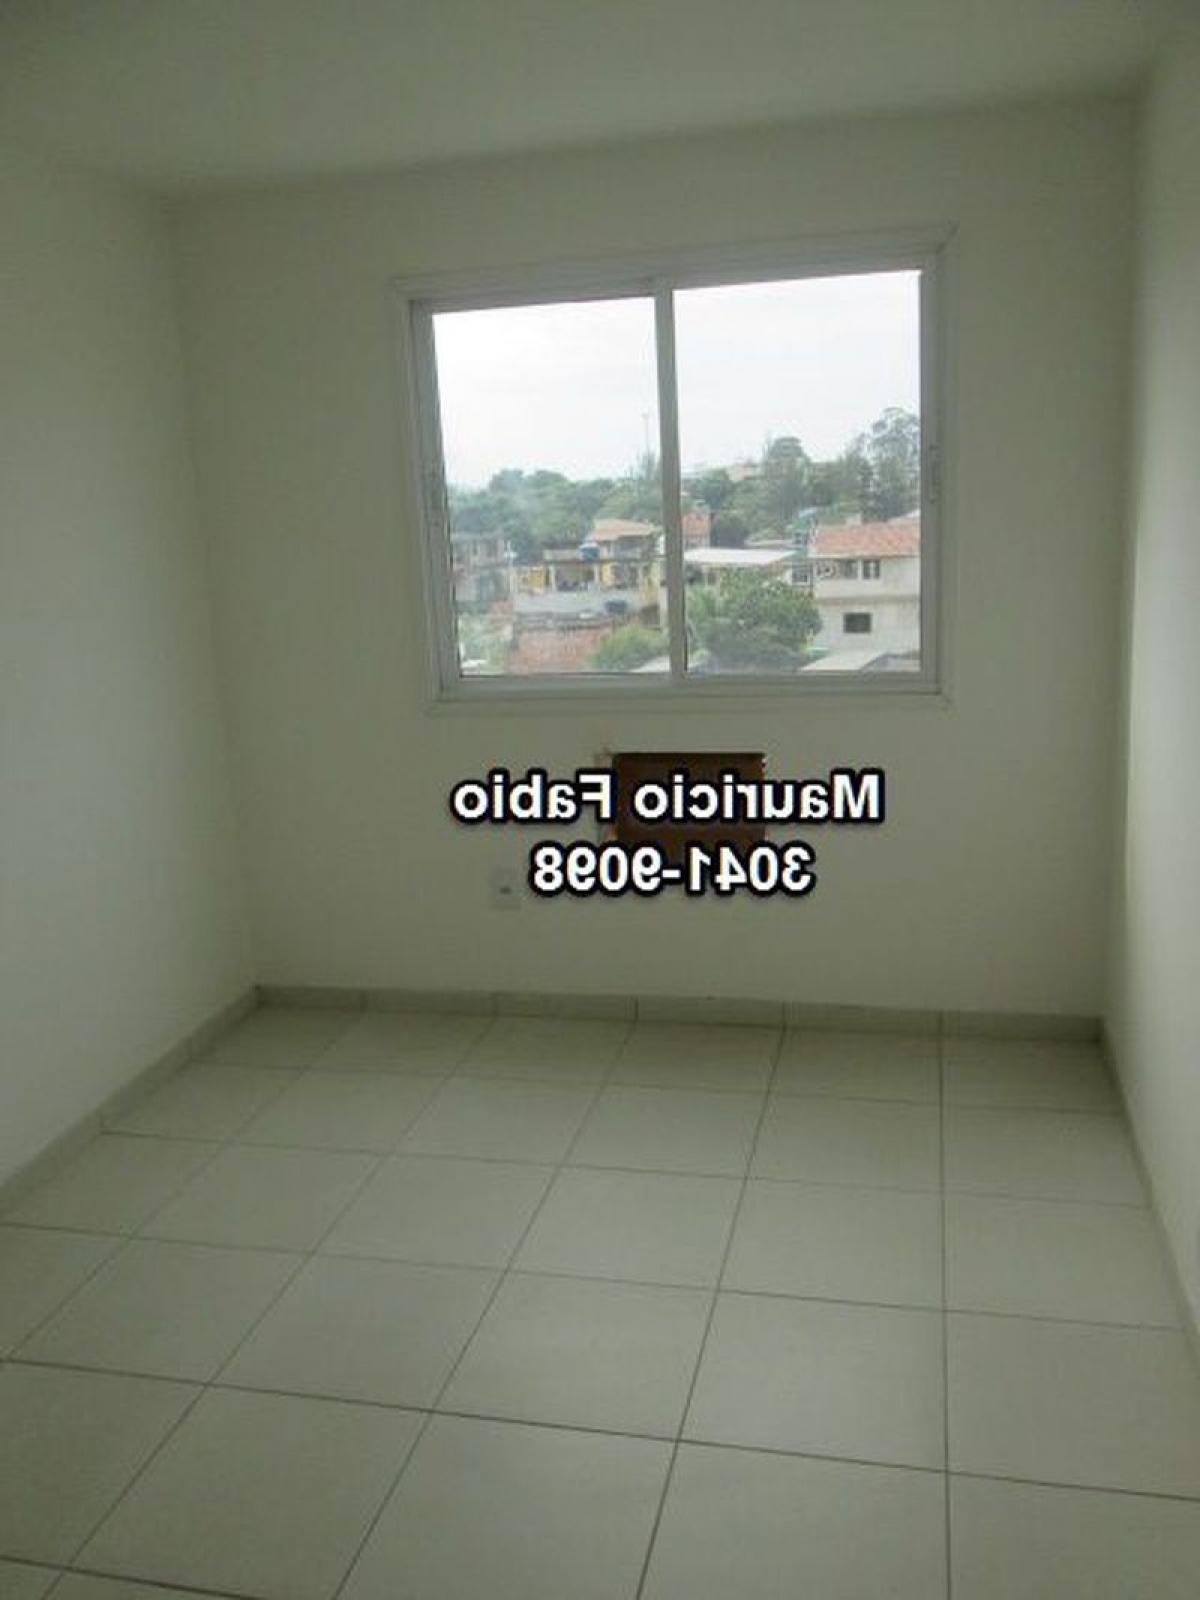 Picture of Apartment For Sale in Nova Iguaçu, Rio De Janeiro, Brazil